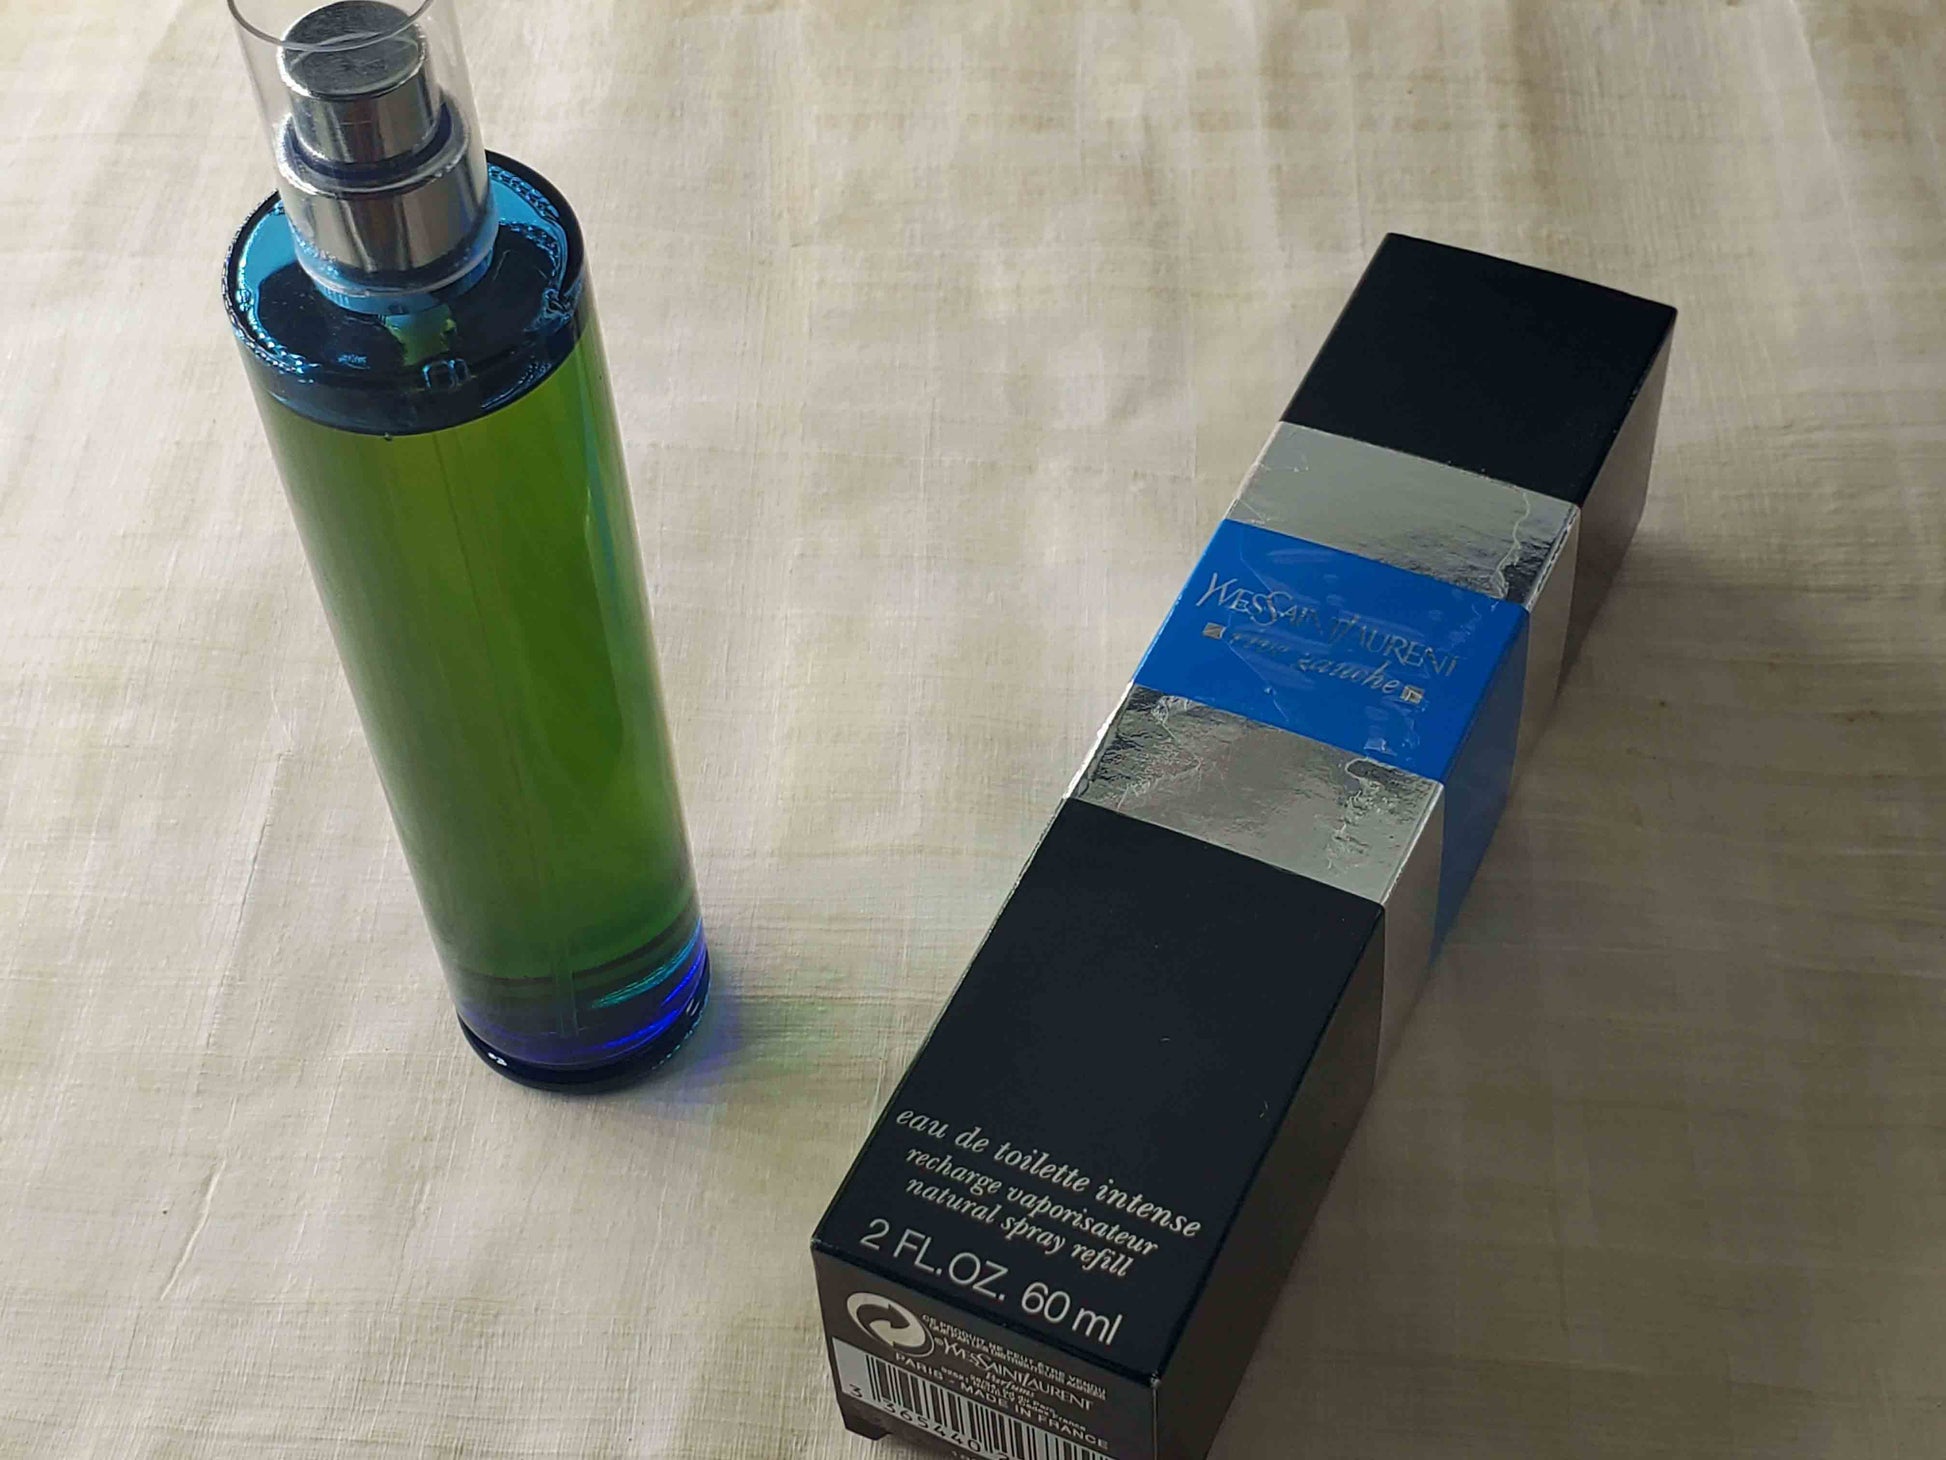 Yves Saint Laurent Rive Gauche Eau De Toilette, Perfume for Women, 3.4 Oz 